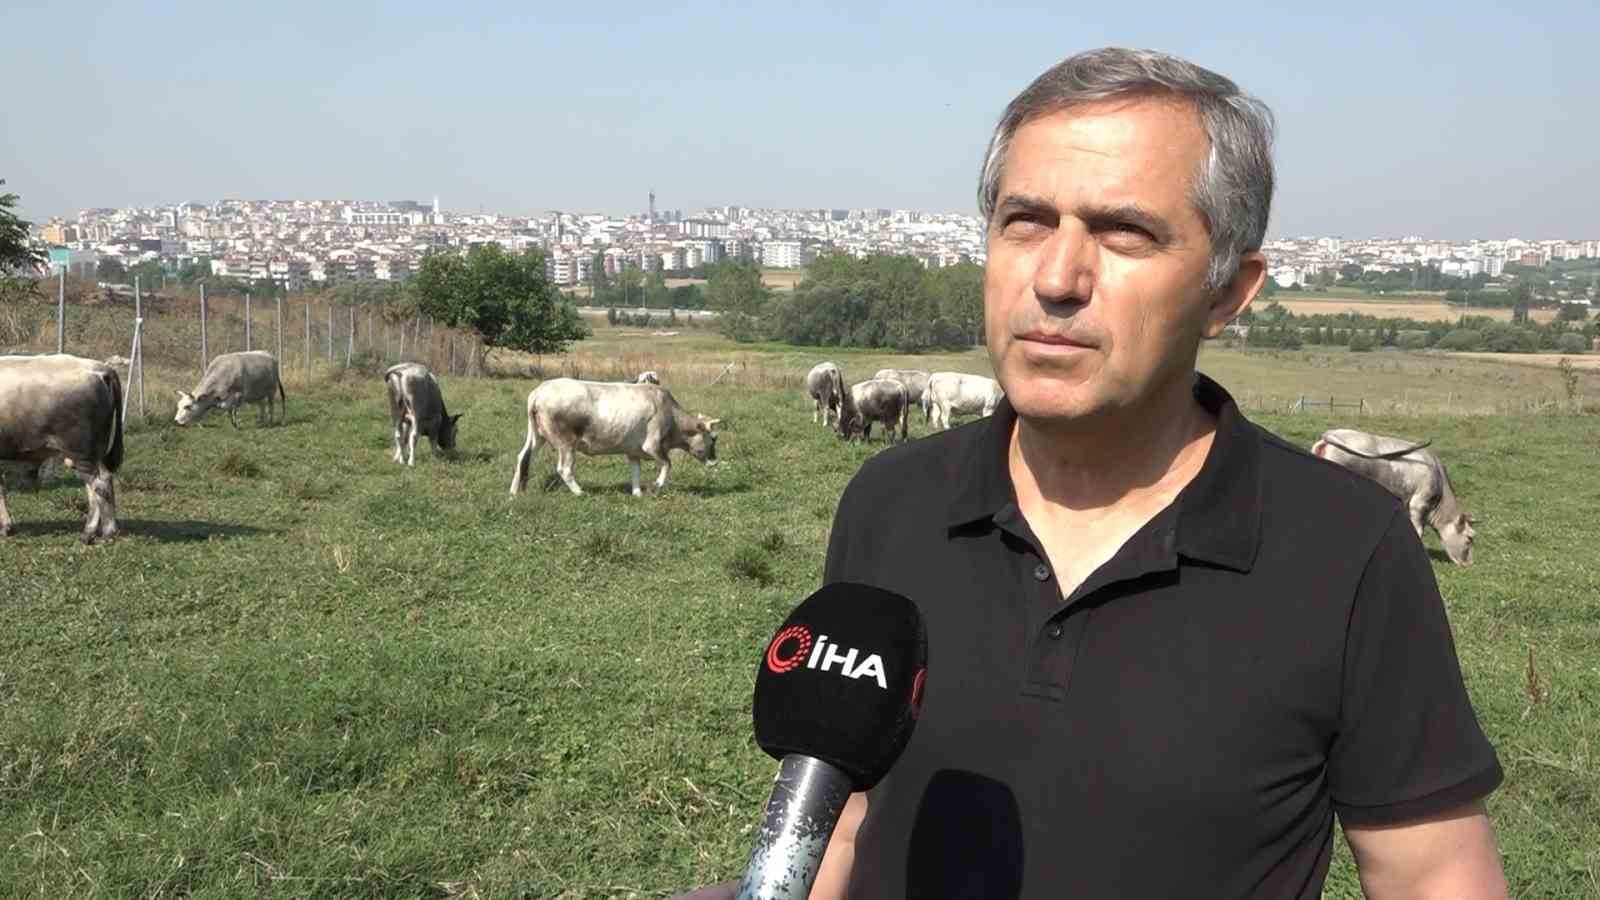 Türkiye’nin ’Boz sığır’ ırkı koruma altına alındı